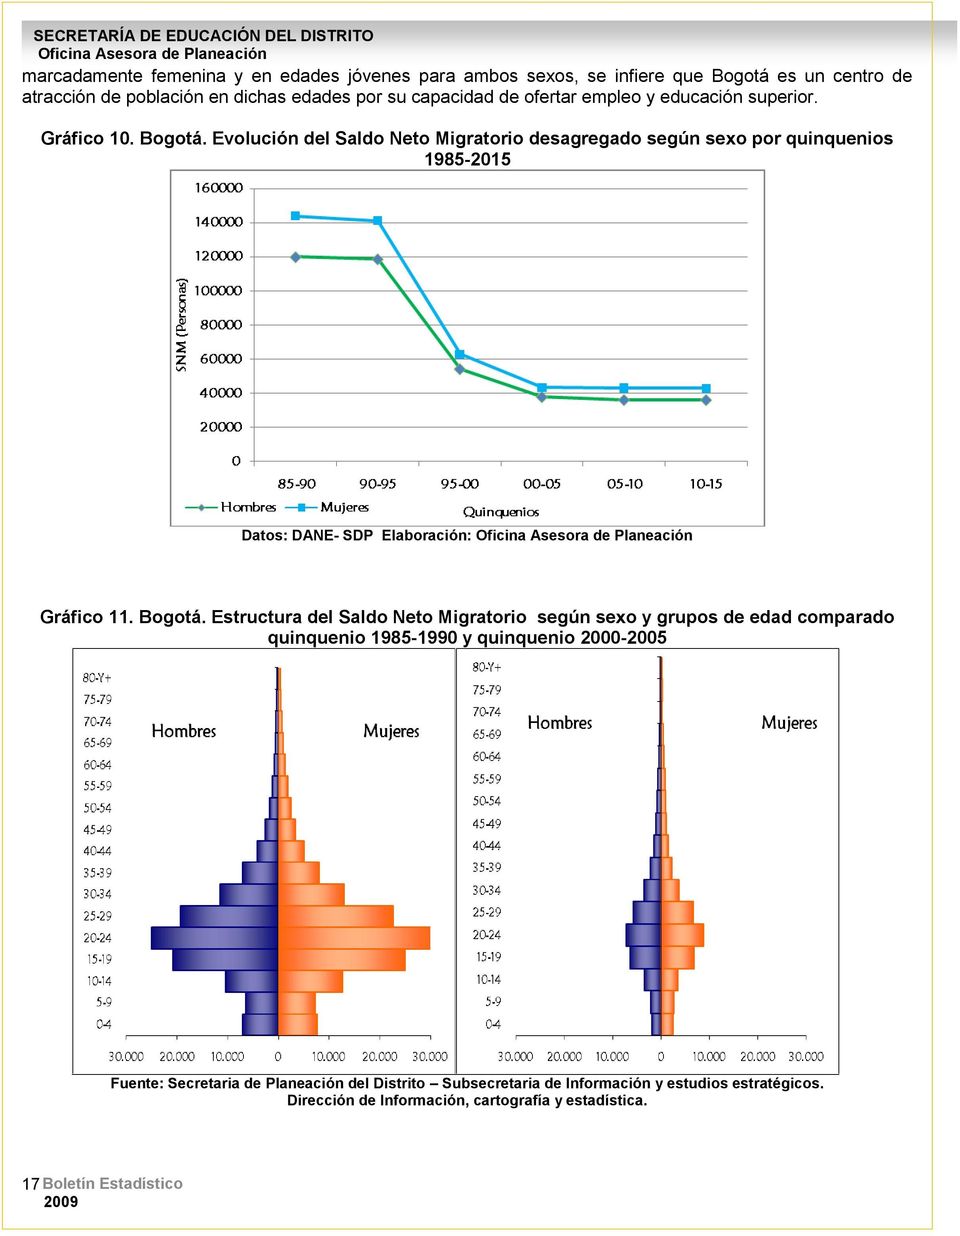 Evolución del Saldo Neto Migratorio desagregado según sexo por quinquenios 1985-2015 Datos: DANE- SDP Elaboración: Gráfico 11. Bogotá.